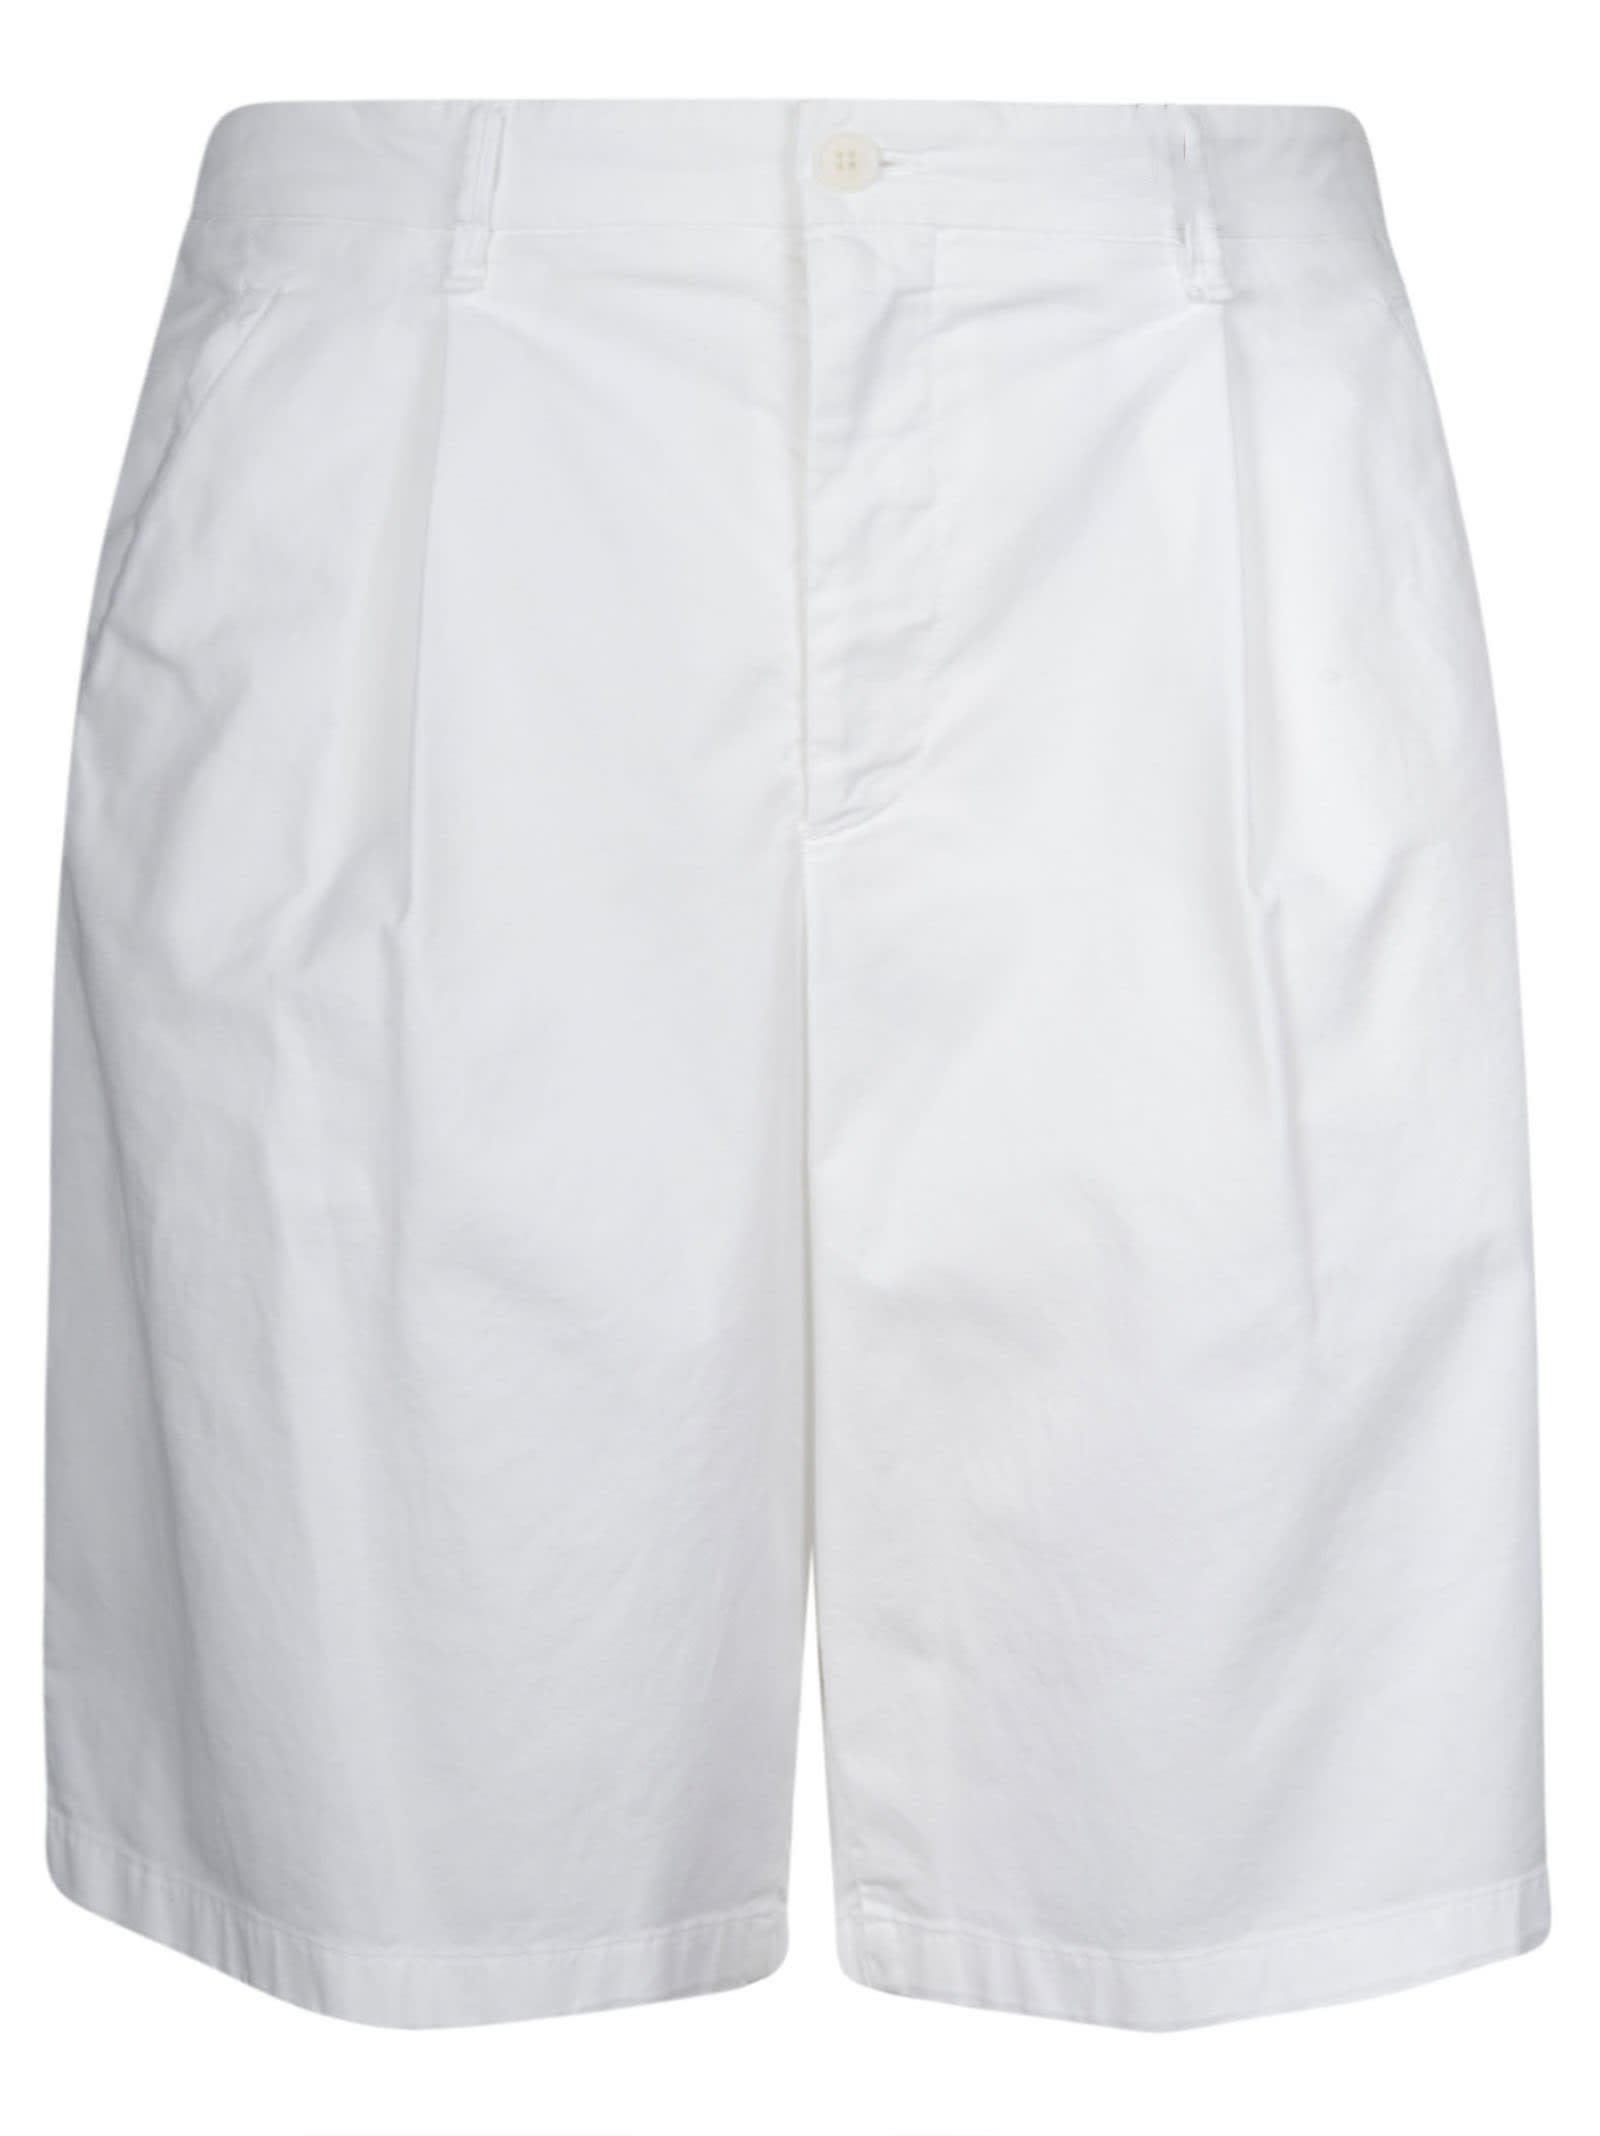 Giorgio Armani Buttoned Shorts In Brillant White